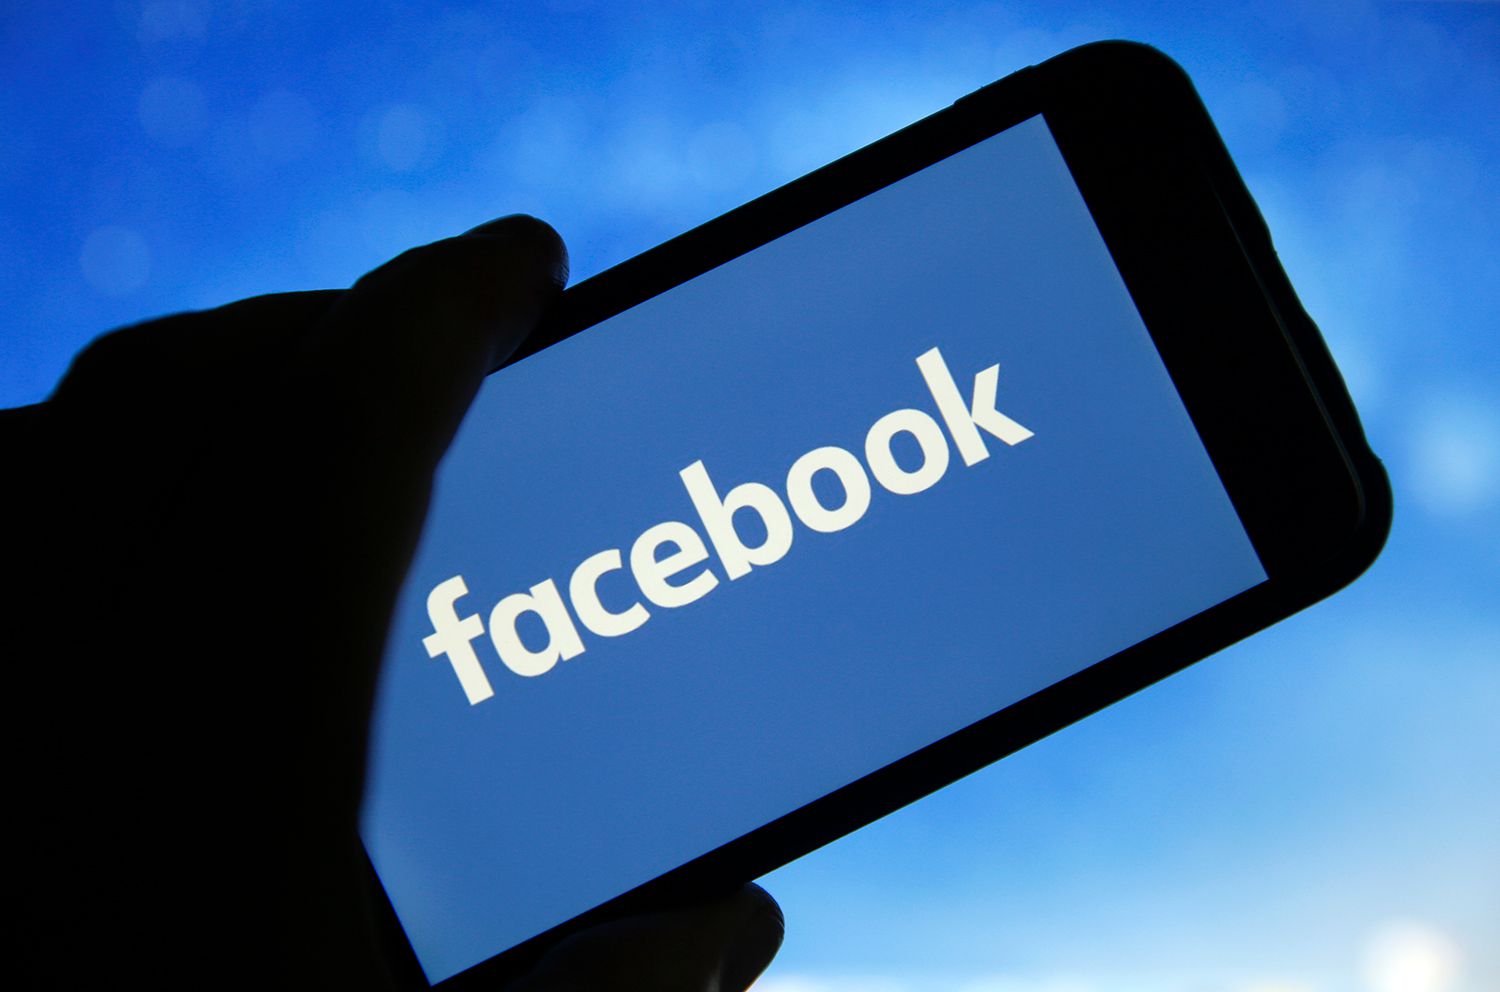 फेसबुकविरुद्ध गम्भीर आरोप, टुक्राटुक्रा पार्न माग गर्दै मुद्दा